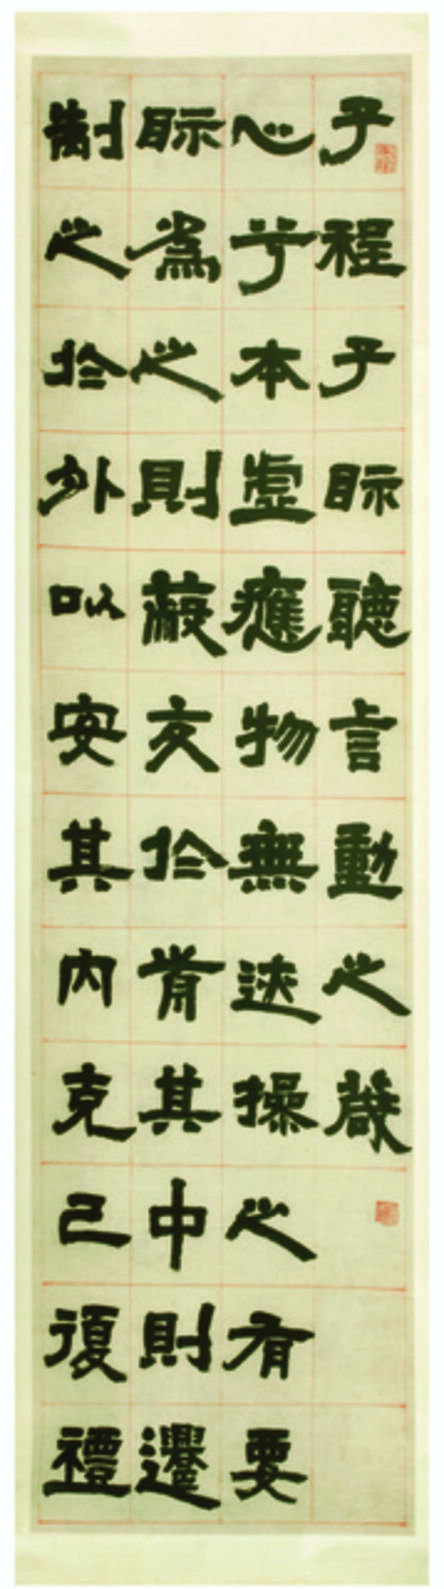 Deng Shiru, ‘Master Cheng’s Admonition on Seeing, Hearing, Words, and Deeds (Chengzi shi ting yan dong zhi zhen)’, 1805